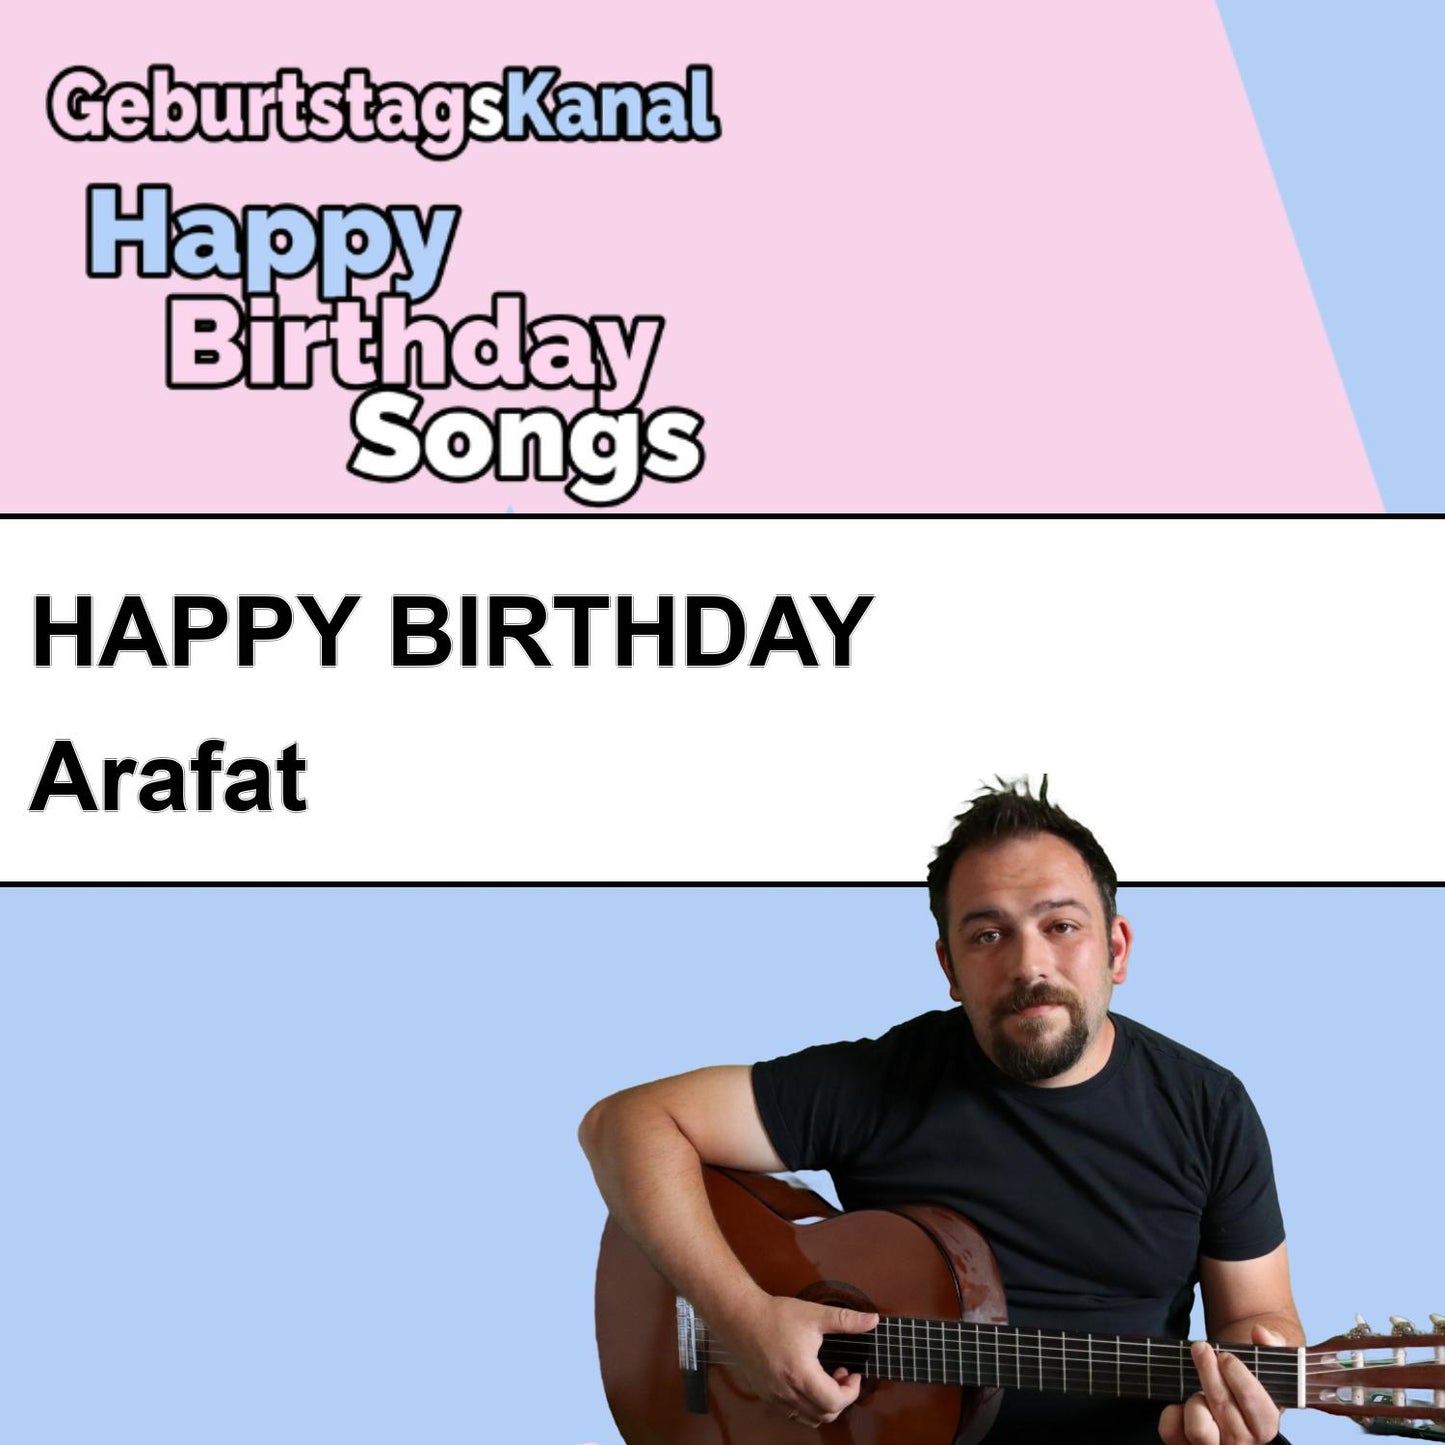 Produktbild Happy Birthday to you Arafat mit Wunschgrußbotschaft